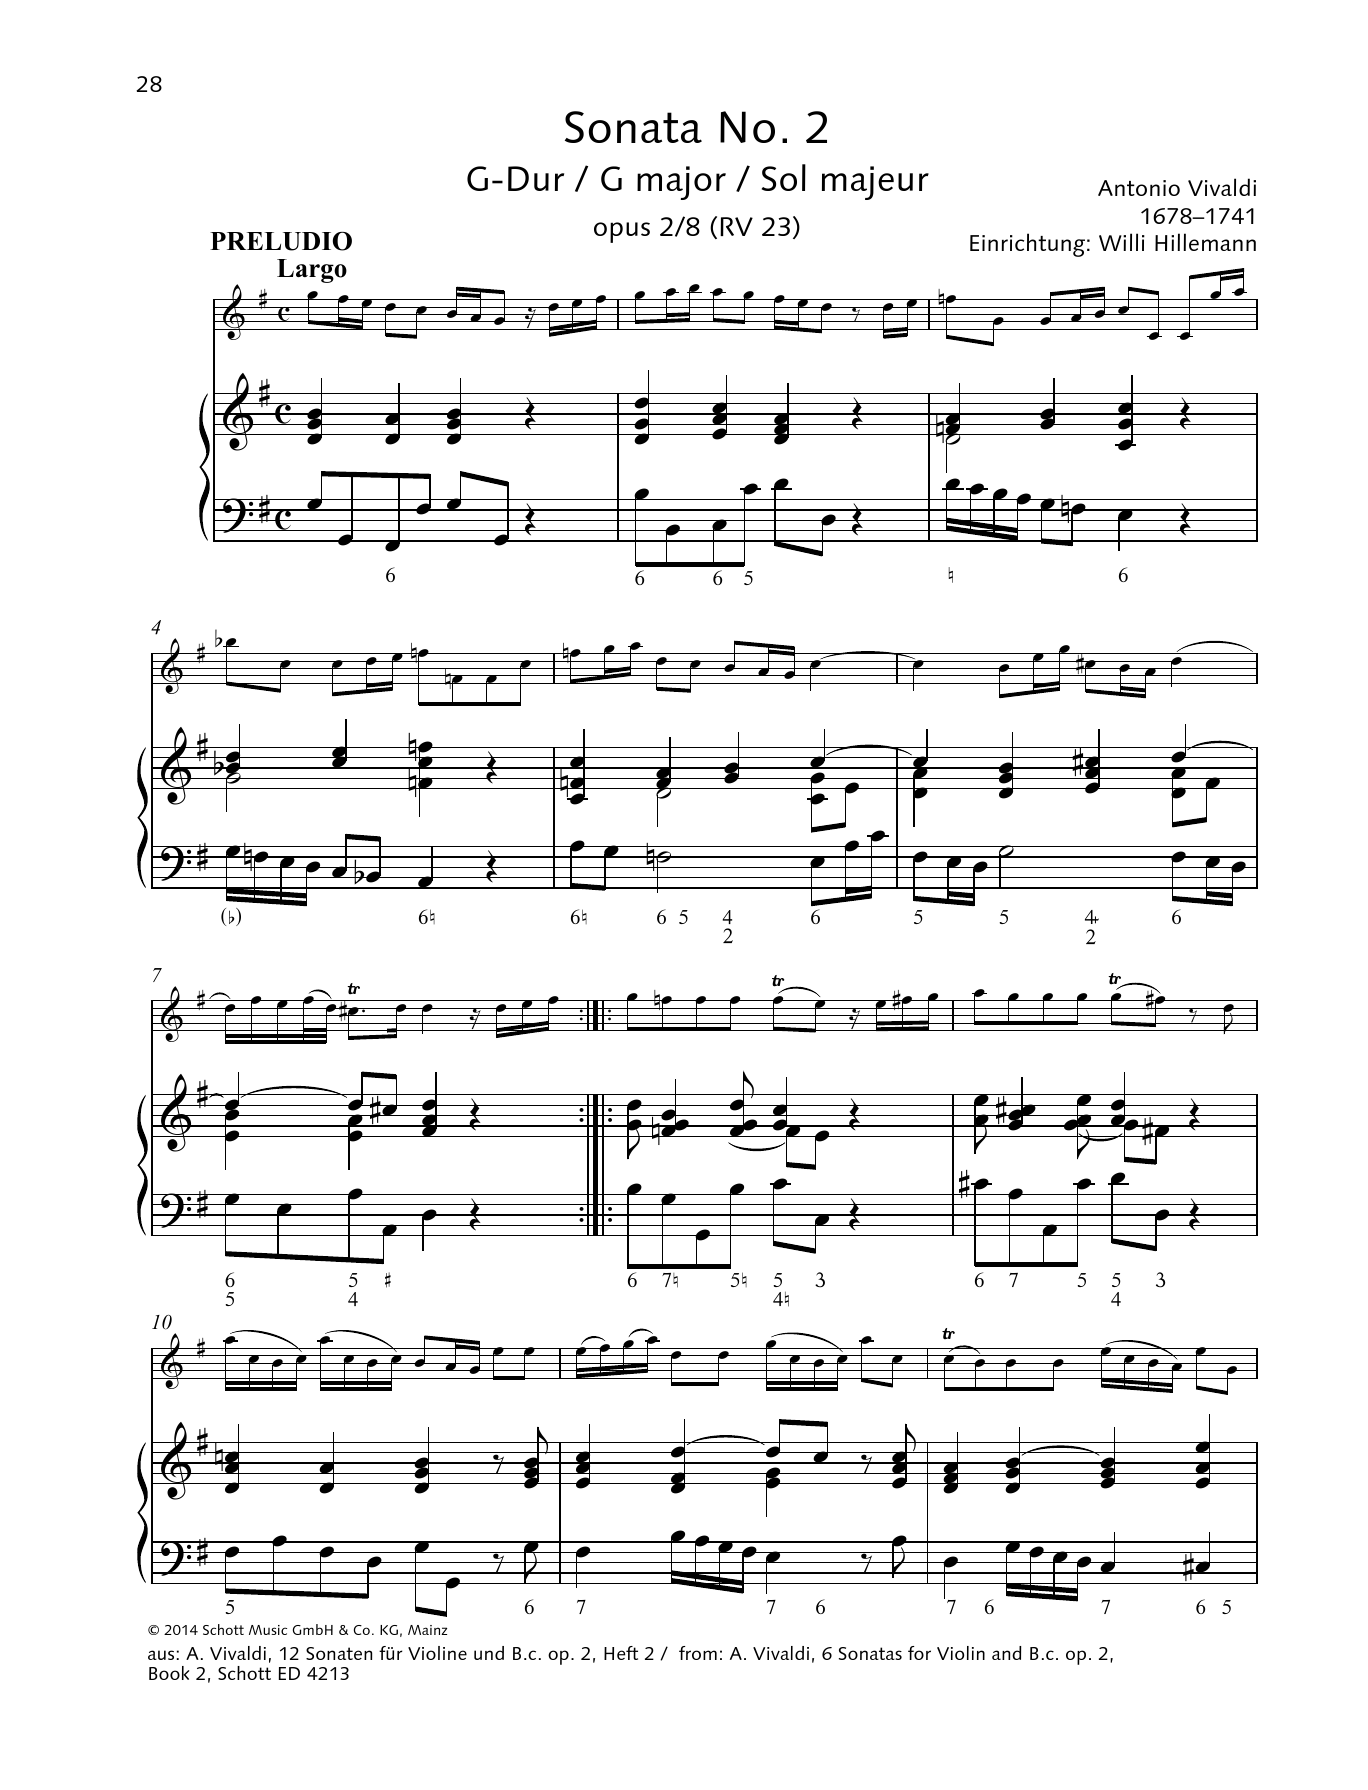 Sonata No. 2 G major sheet music